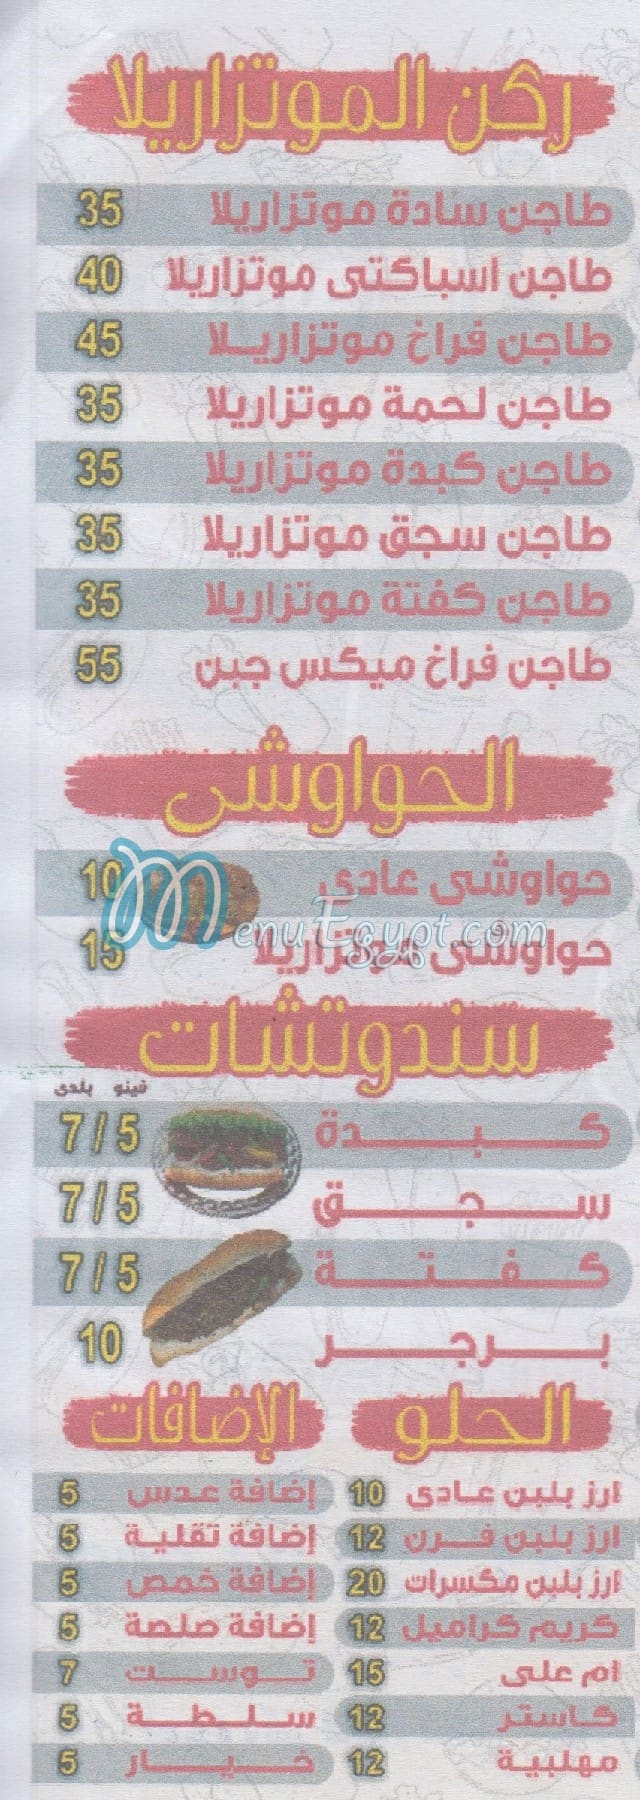 Abo Solyman Star menu Egypt